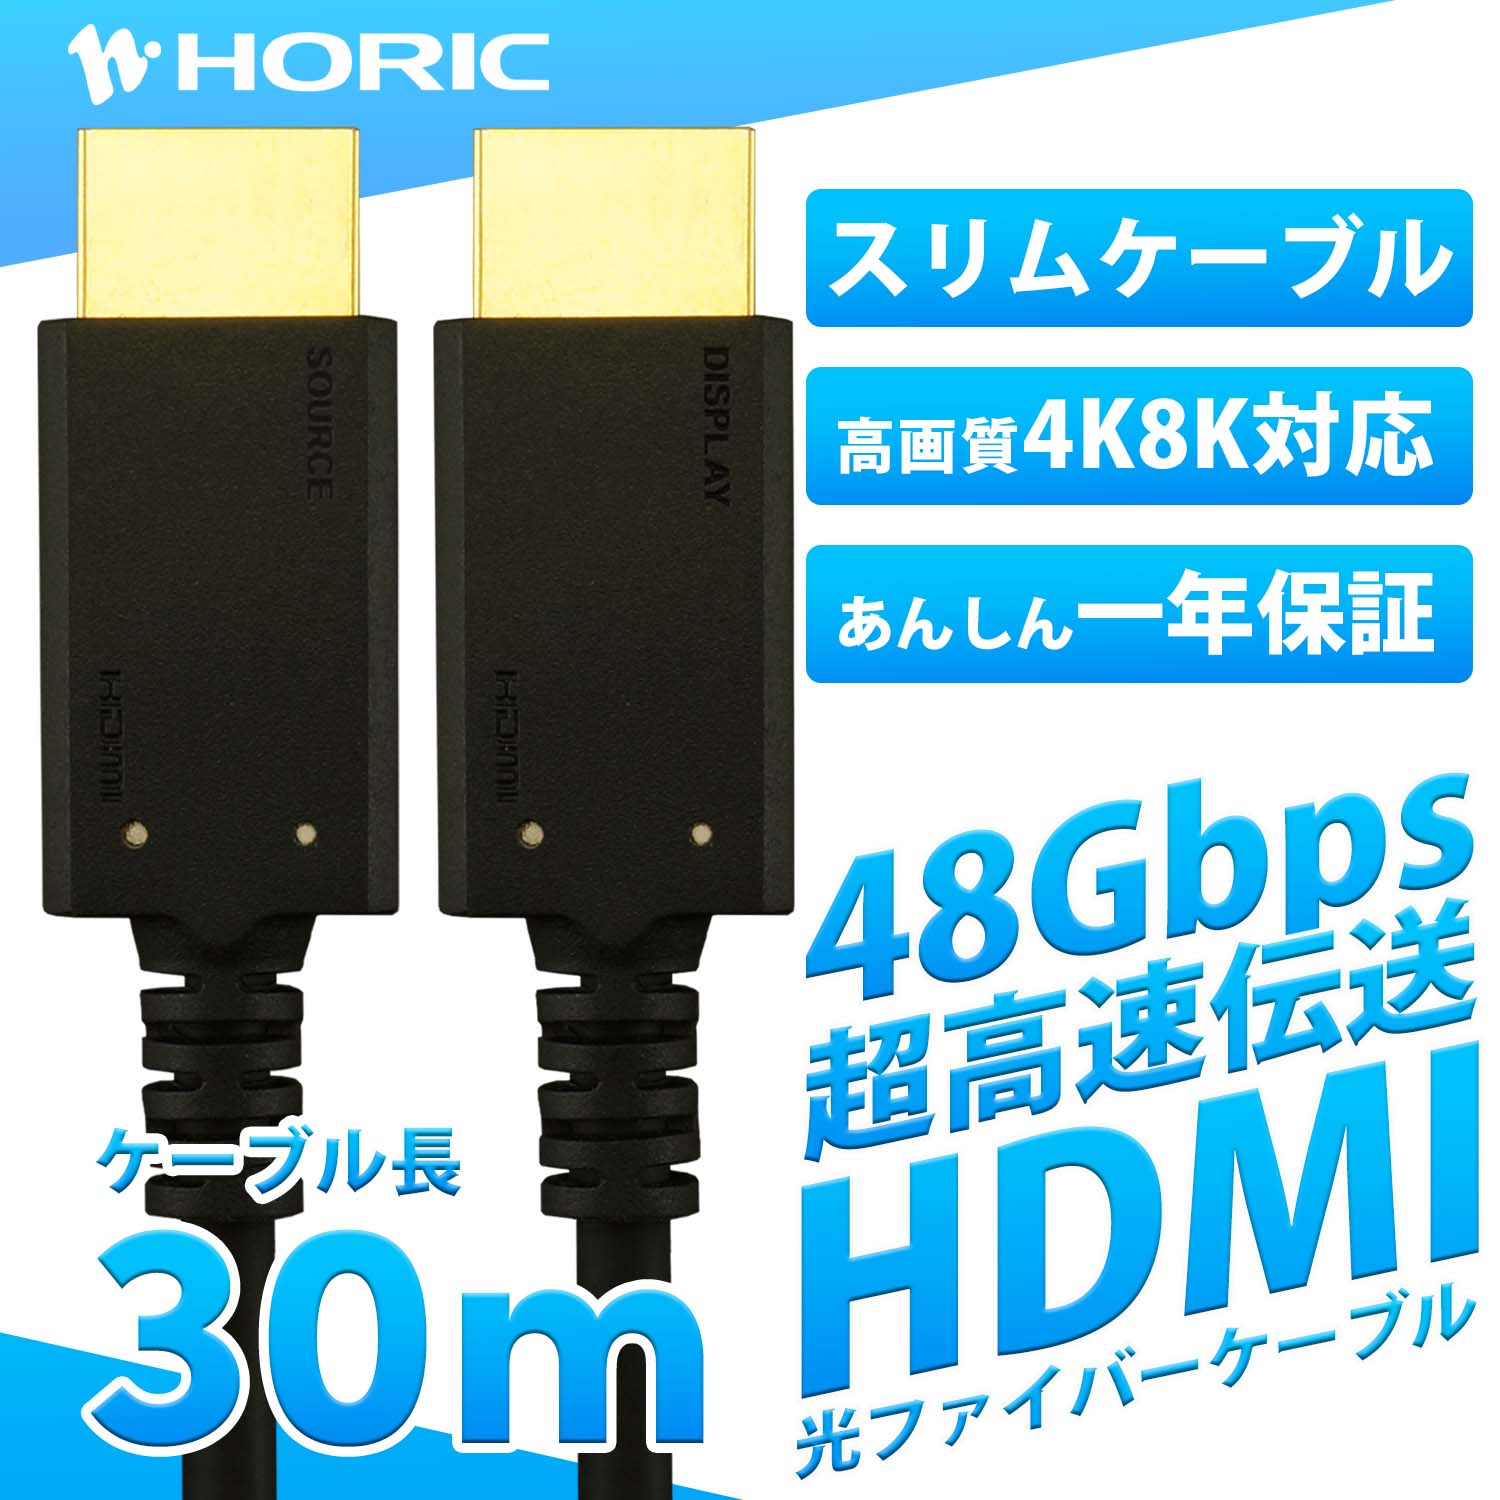 ホーリックダイレクト / 光ファイバー HDMIケーブル 30m HDM300-629BK